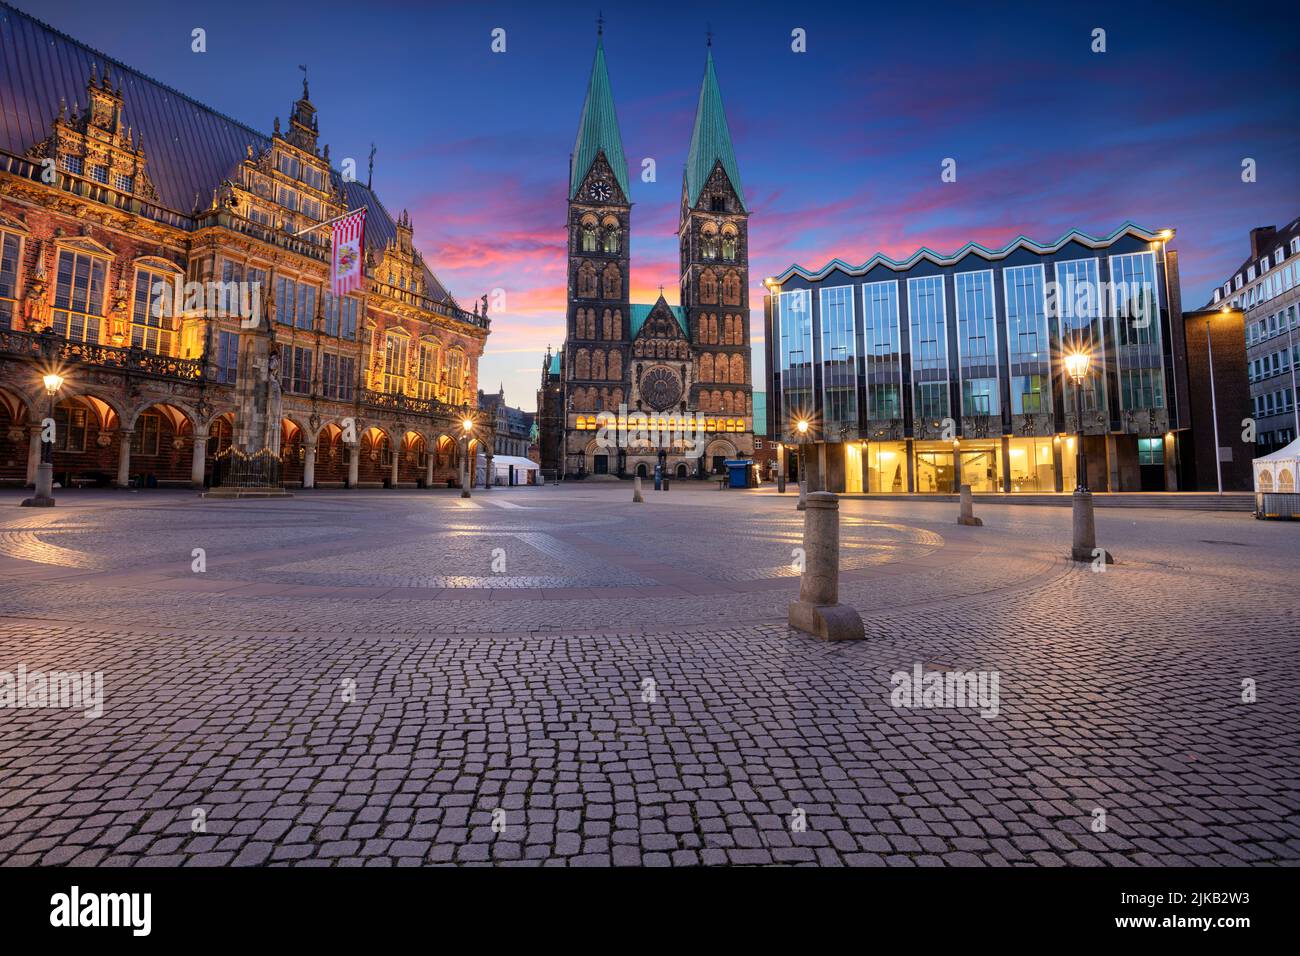 Bremen, Alemania. Imagen del paisaje urbano de la ciudad hanseática de Bremen, Alemania, con la histórica Plaza del Mercado, la Catedral de Bremen y el Ayuntamiento al amanecer en verano. Foto de stock